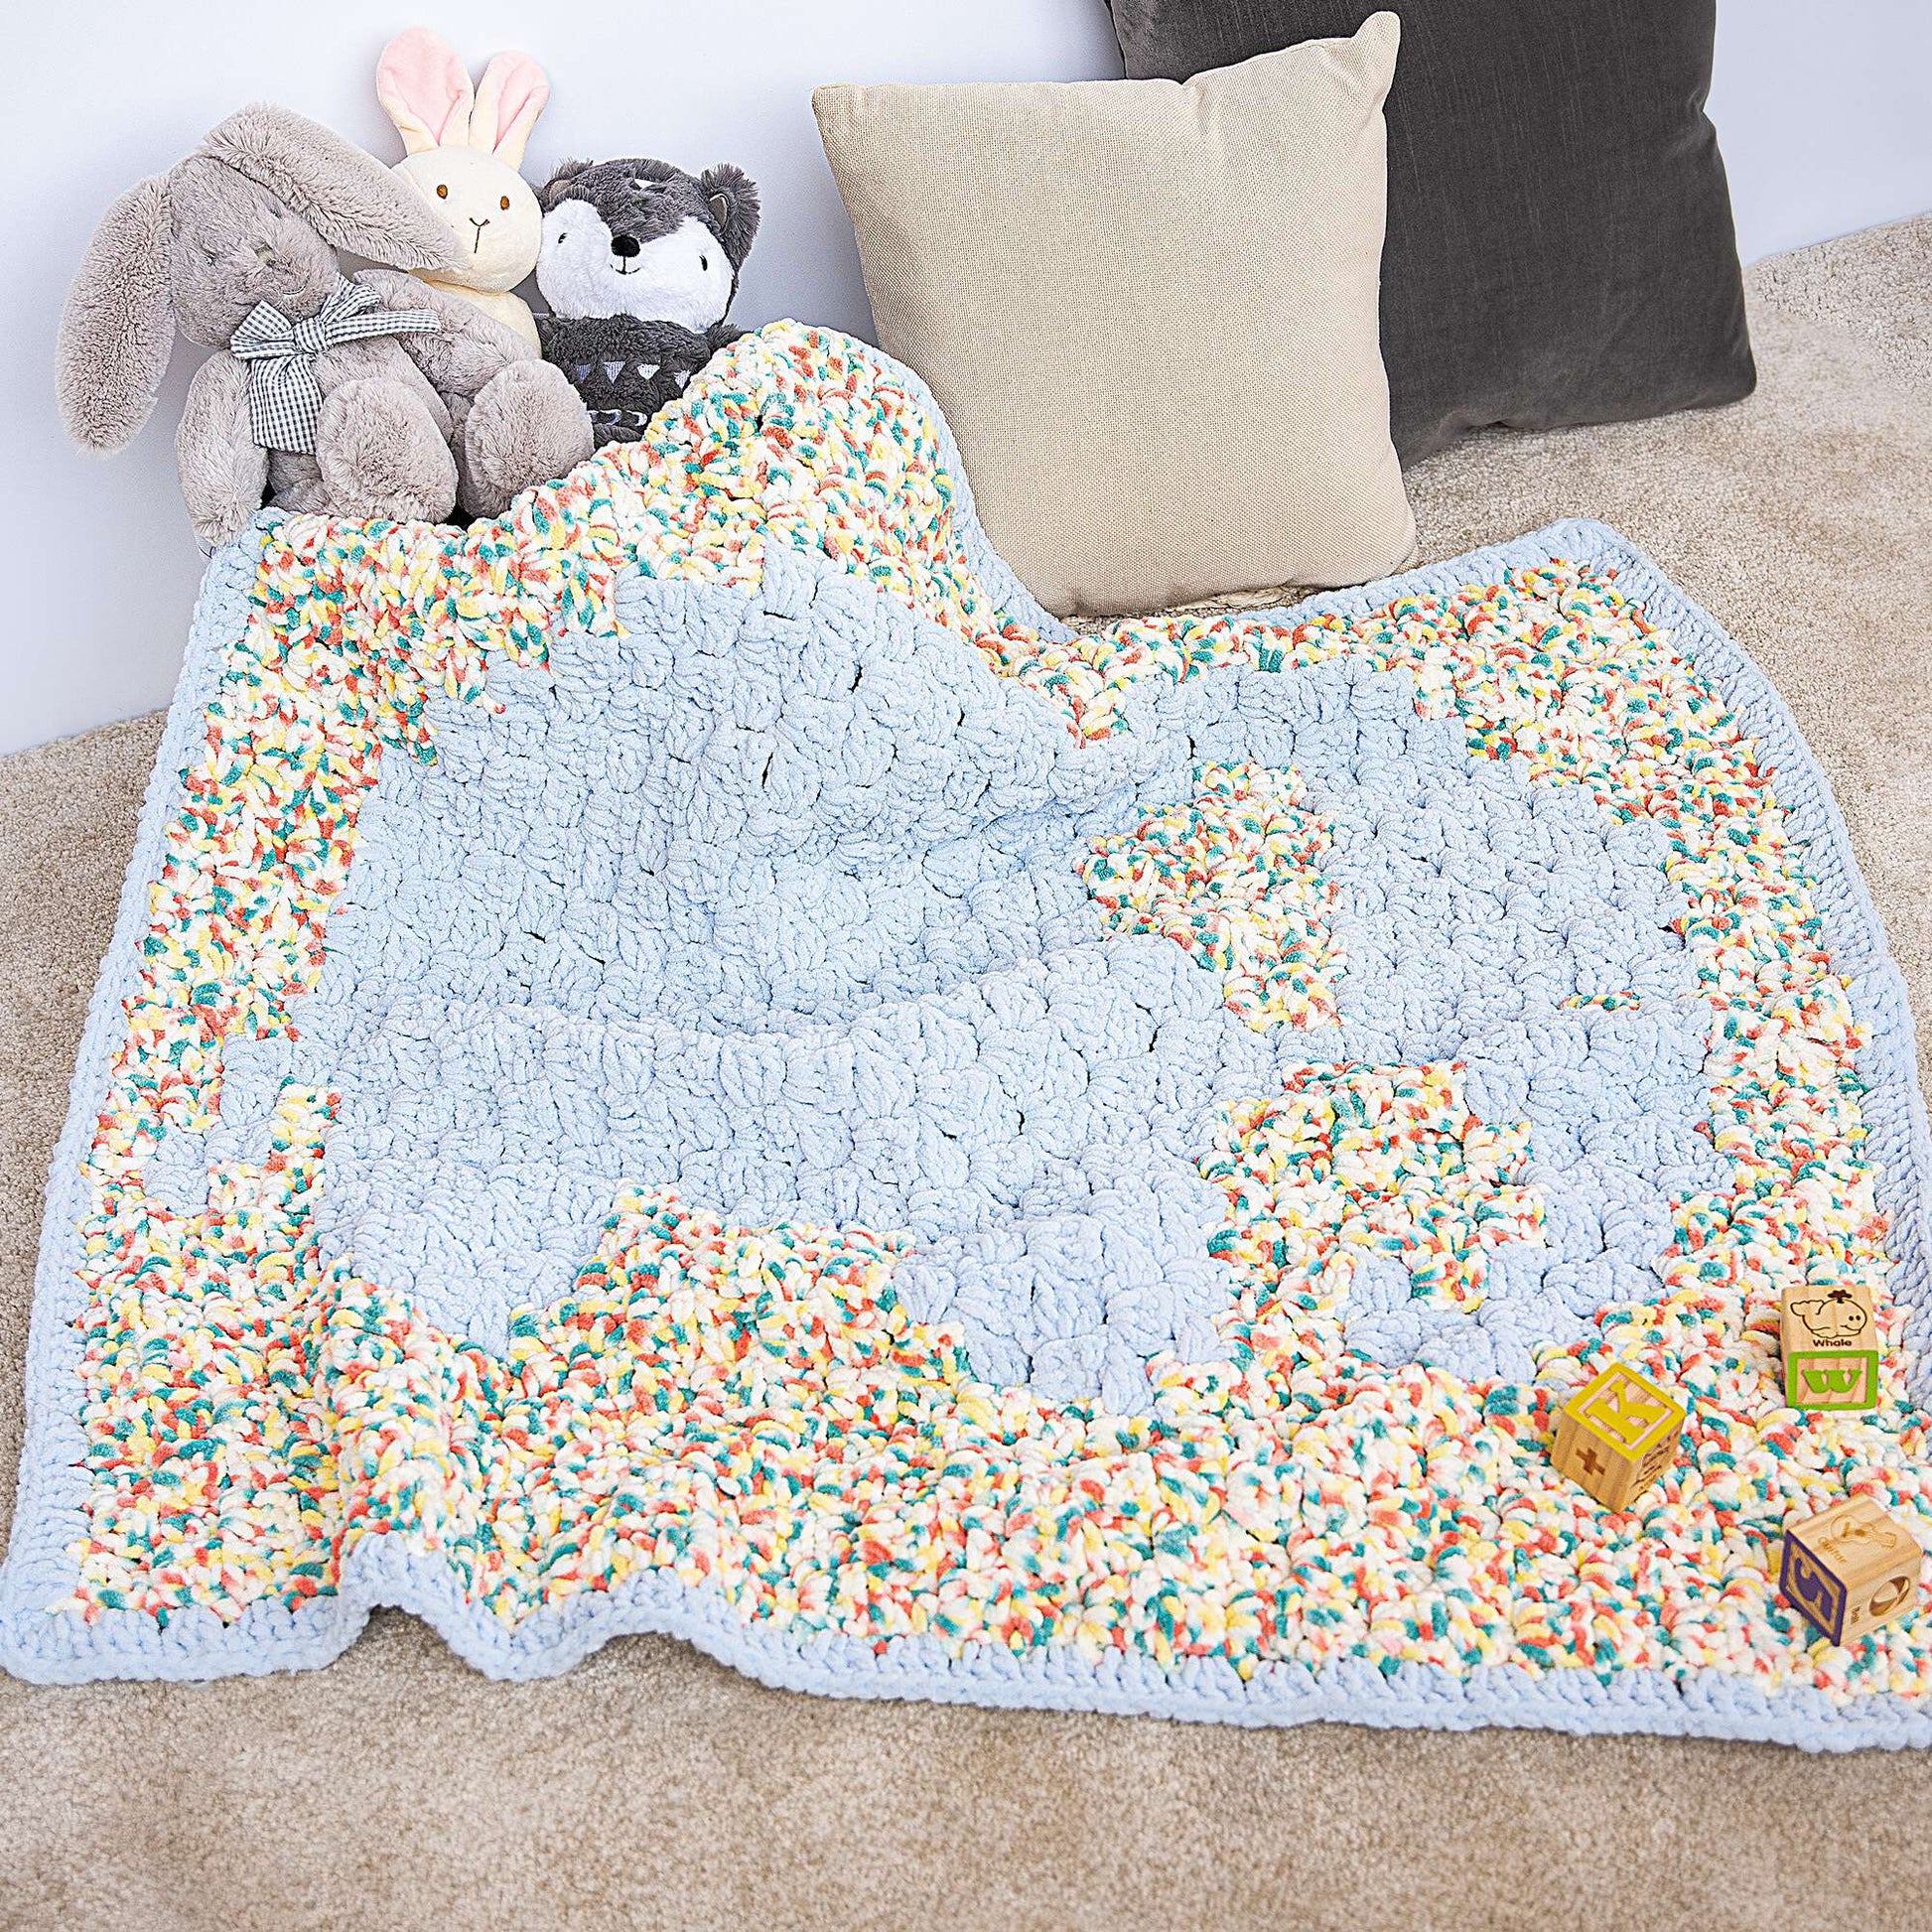 Free Bernat Elephant Crochet Baby Blanket Pattern